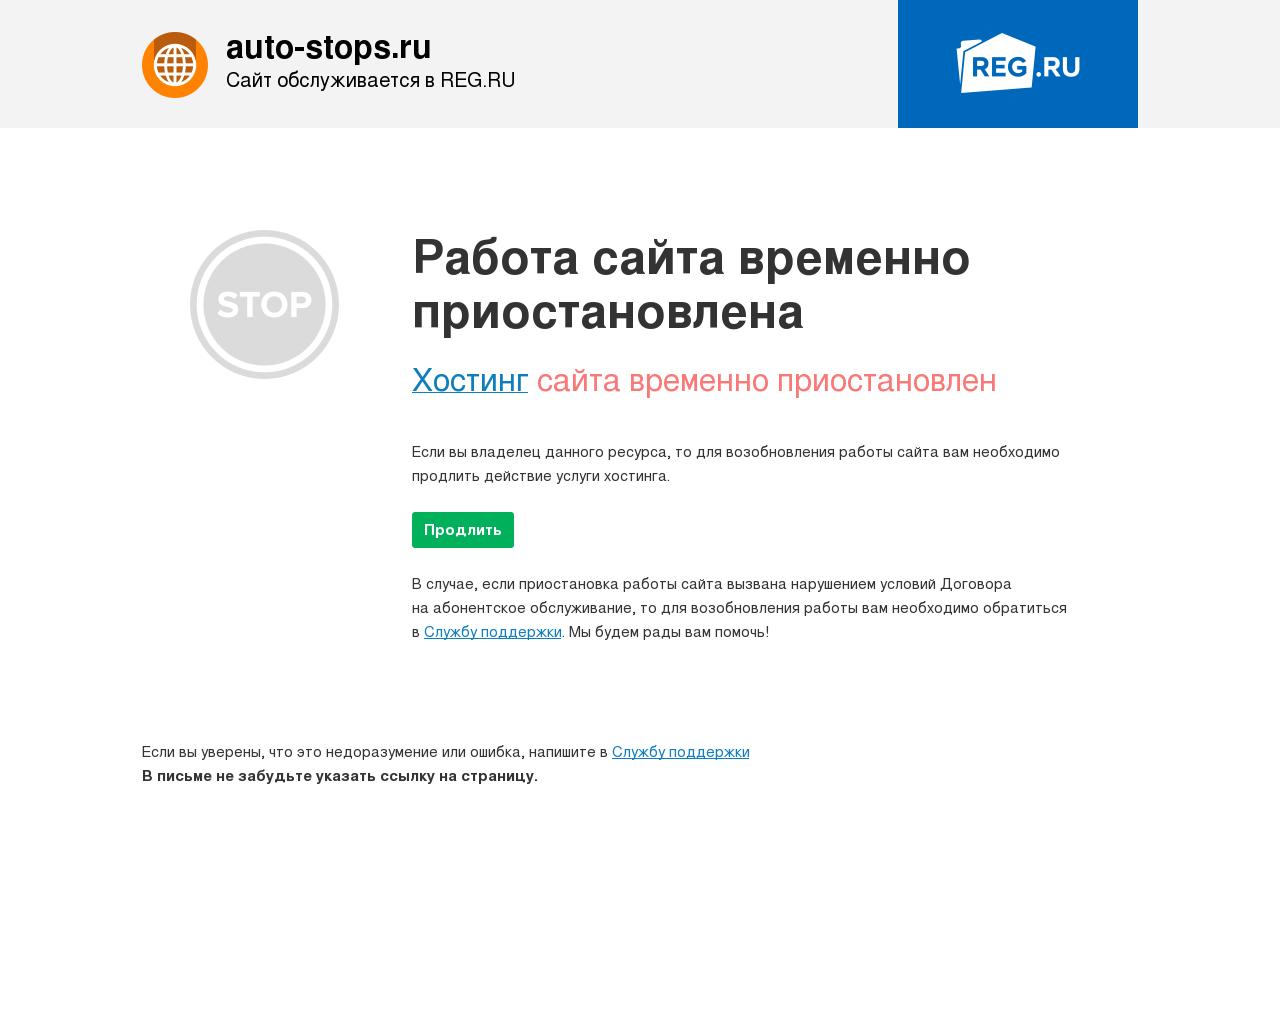 Изображение сайта auto-stops.ru в разрешении 1280x1024